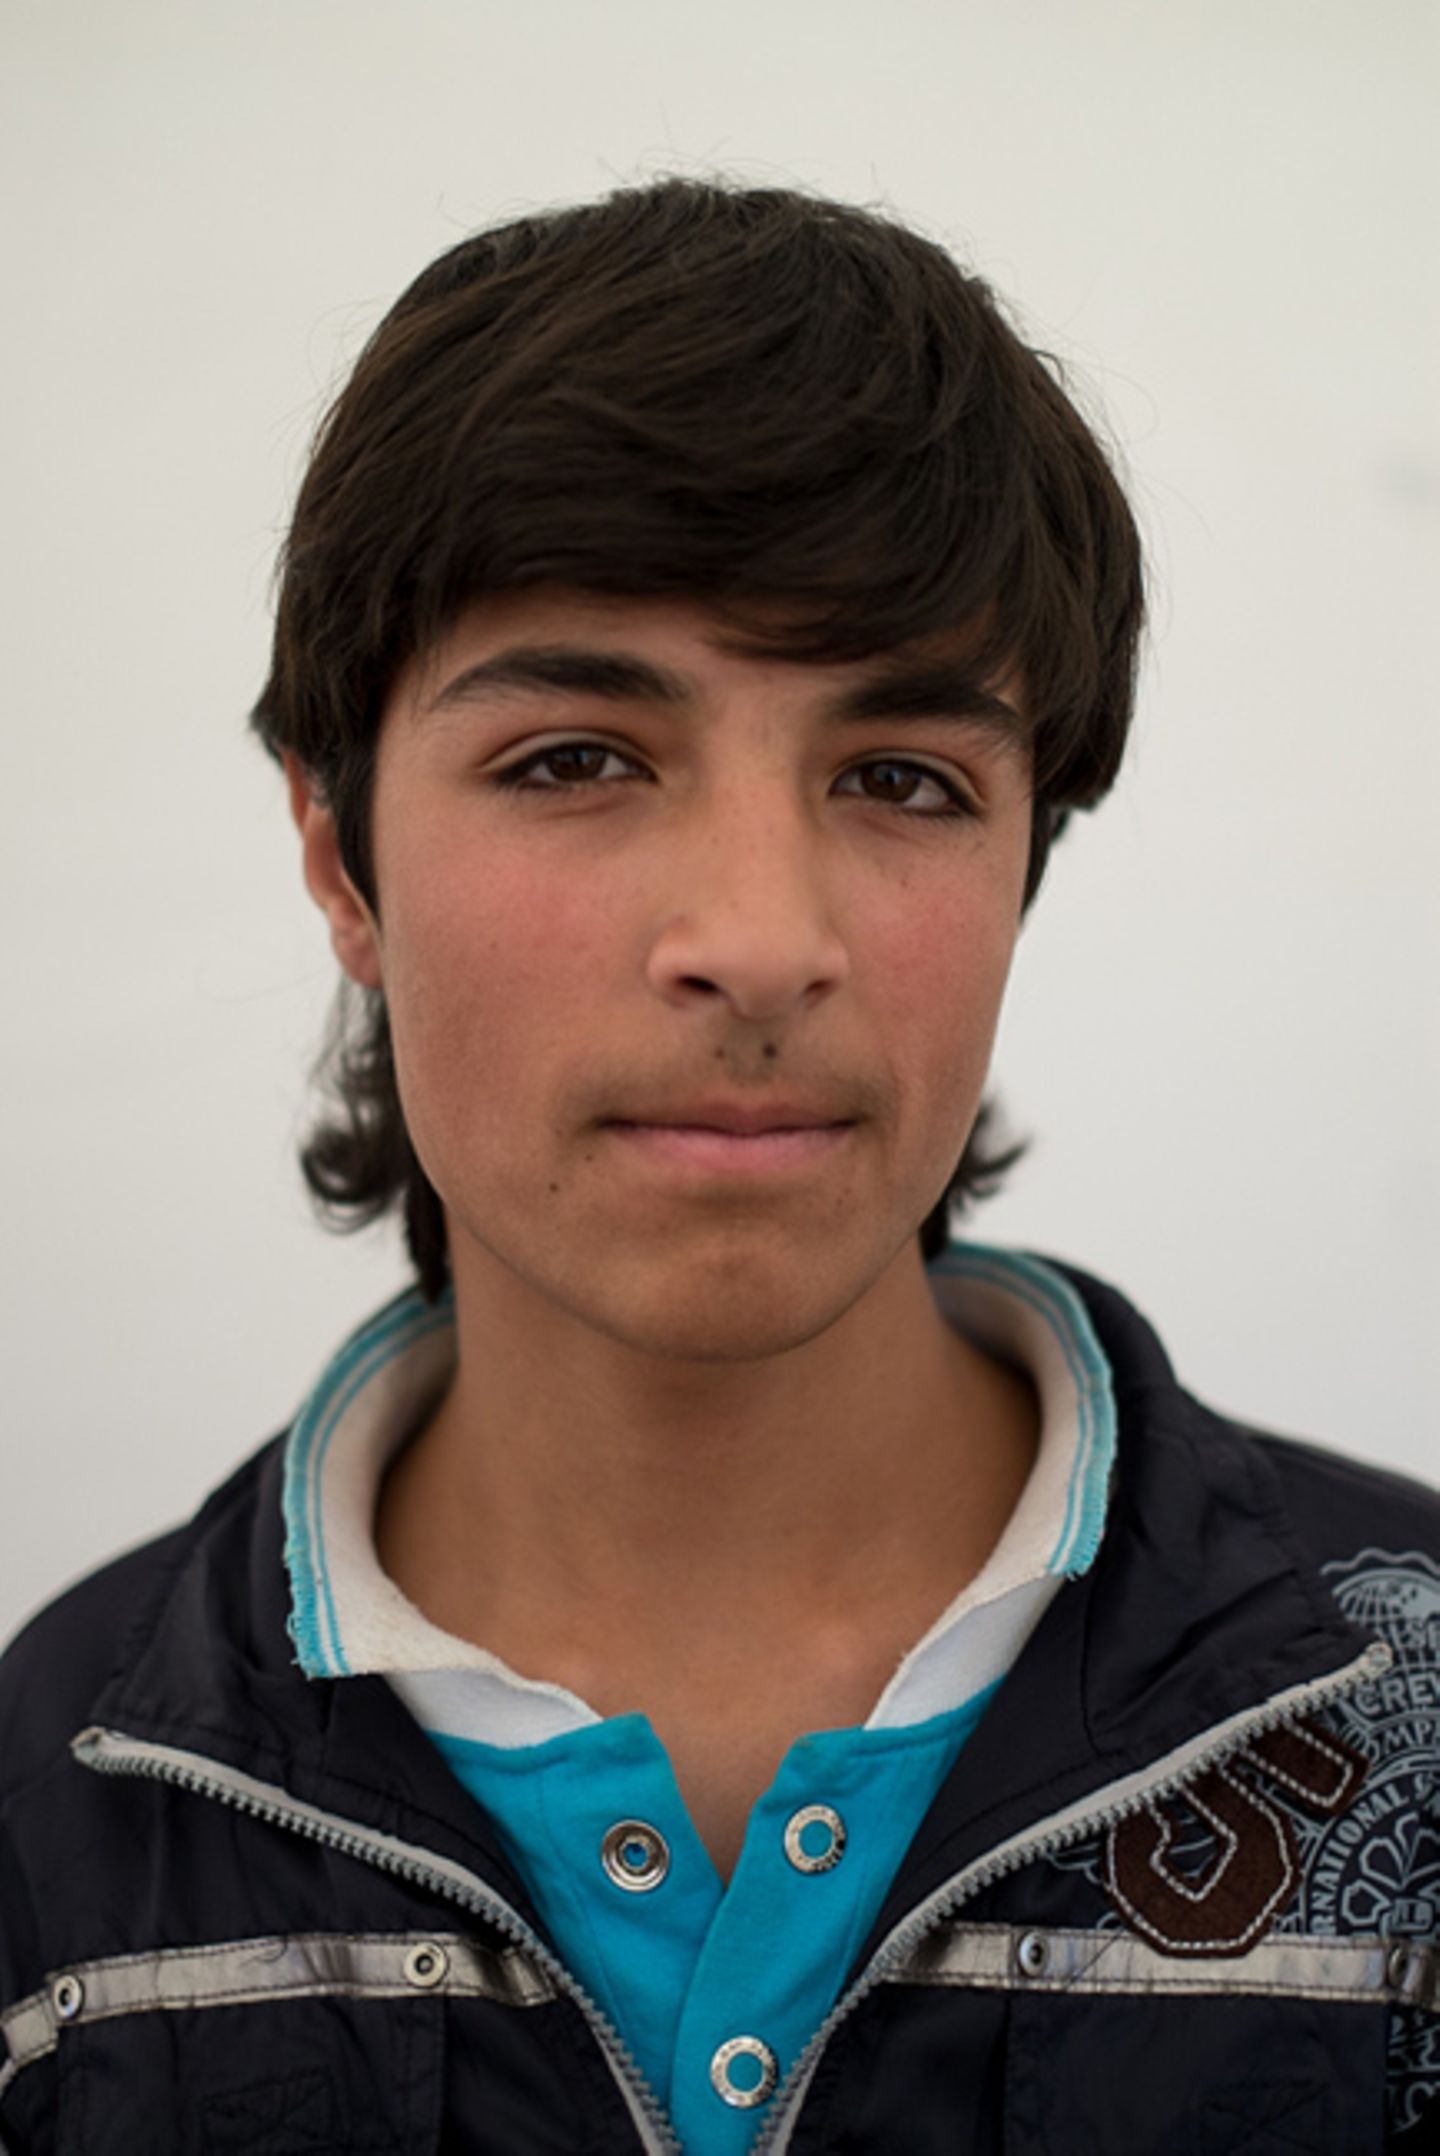 Fotostrecke: Die Flüchtlingskinder Syriens - Bild 17